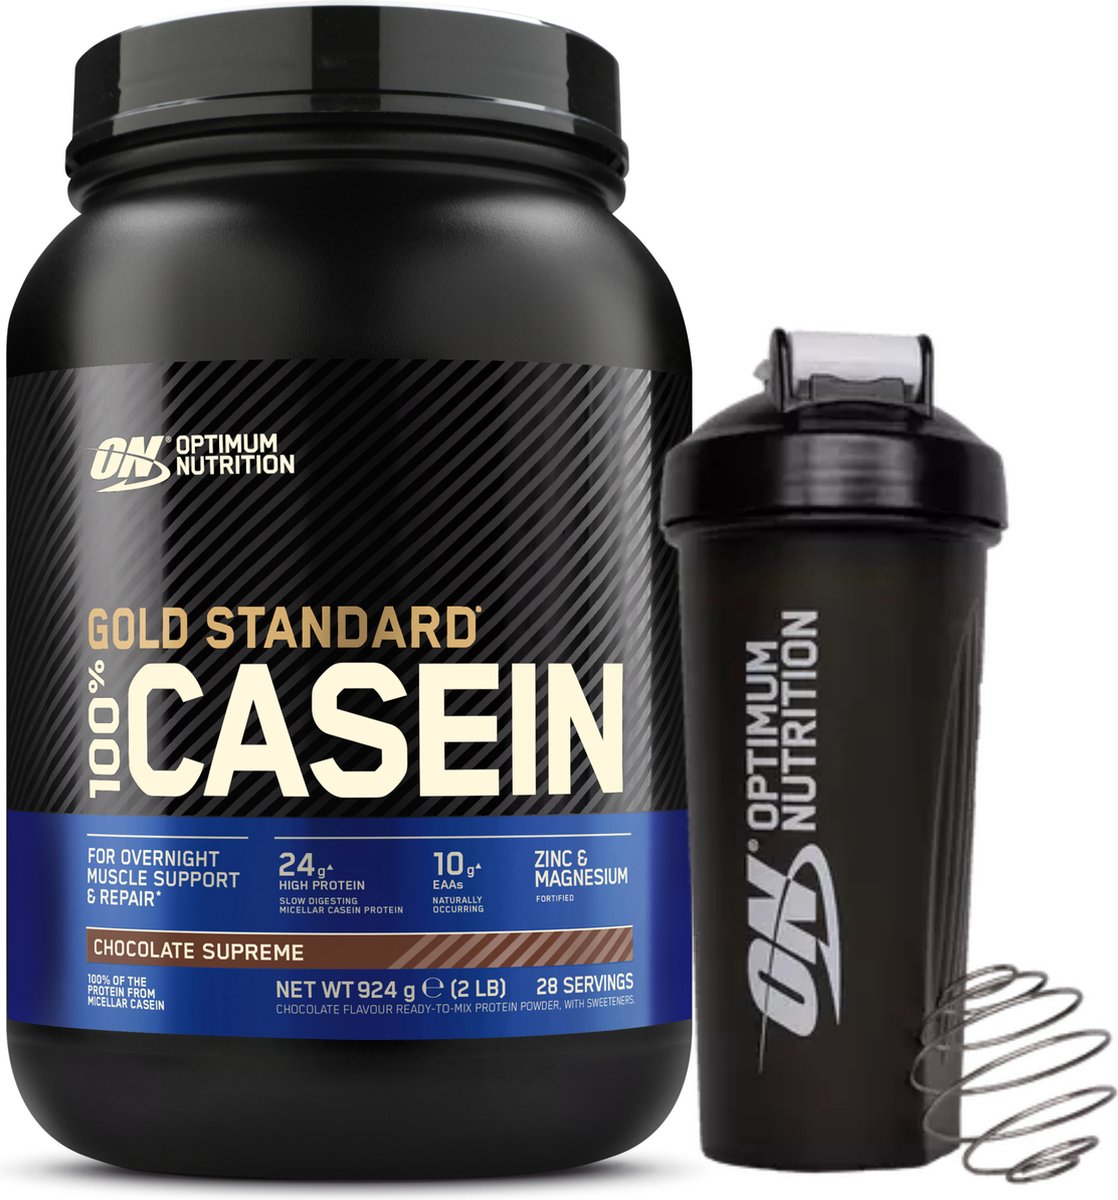 Optimum Nutrition 100% Casein Time Release Protein Bundel - Chocolade Caseine Proteine Poeder + ON Shakebeker - 28 servings (924 gram)